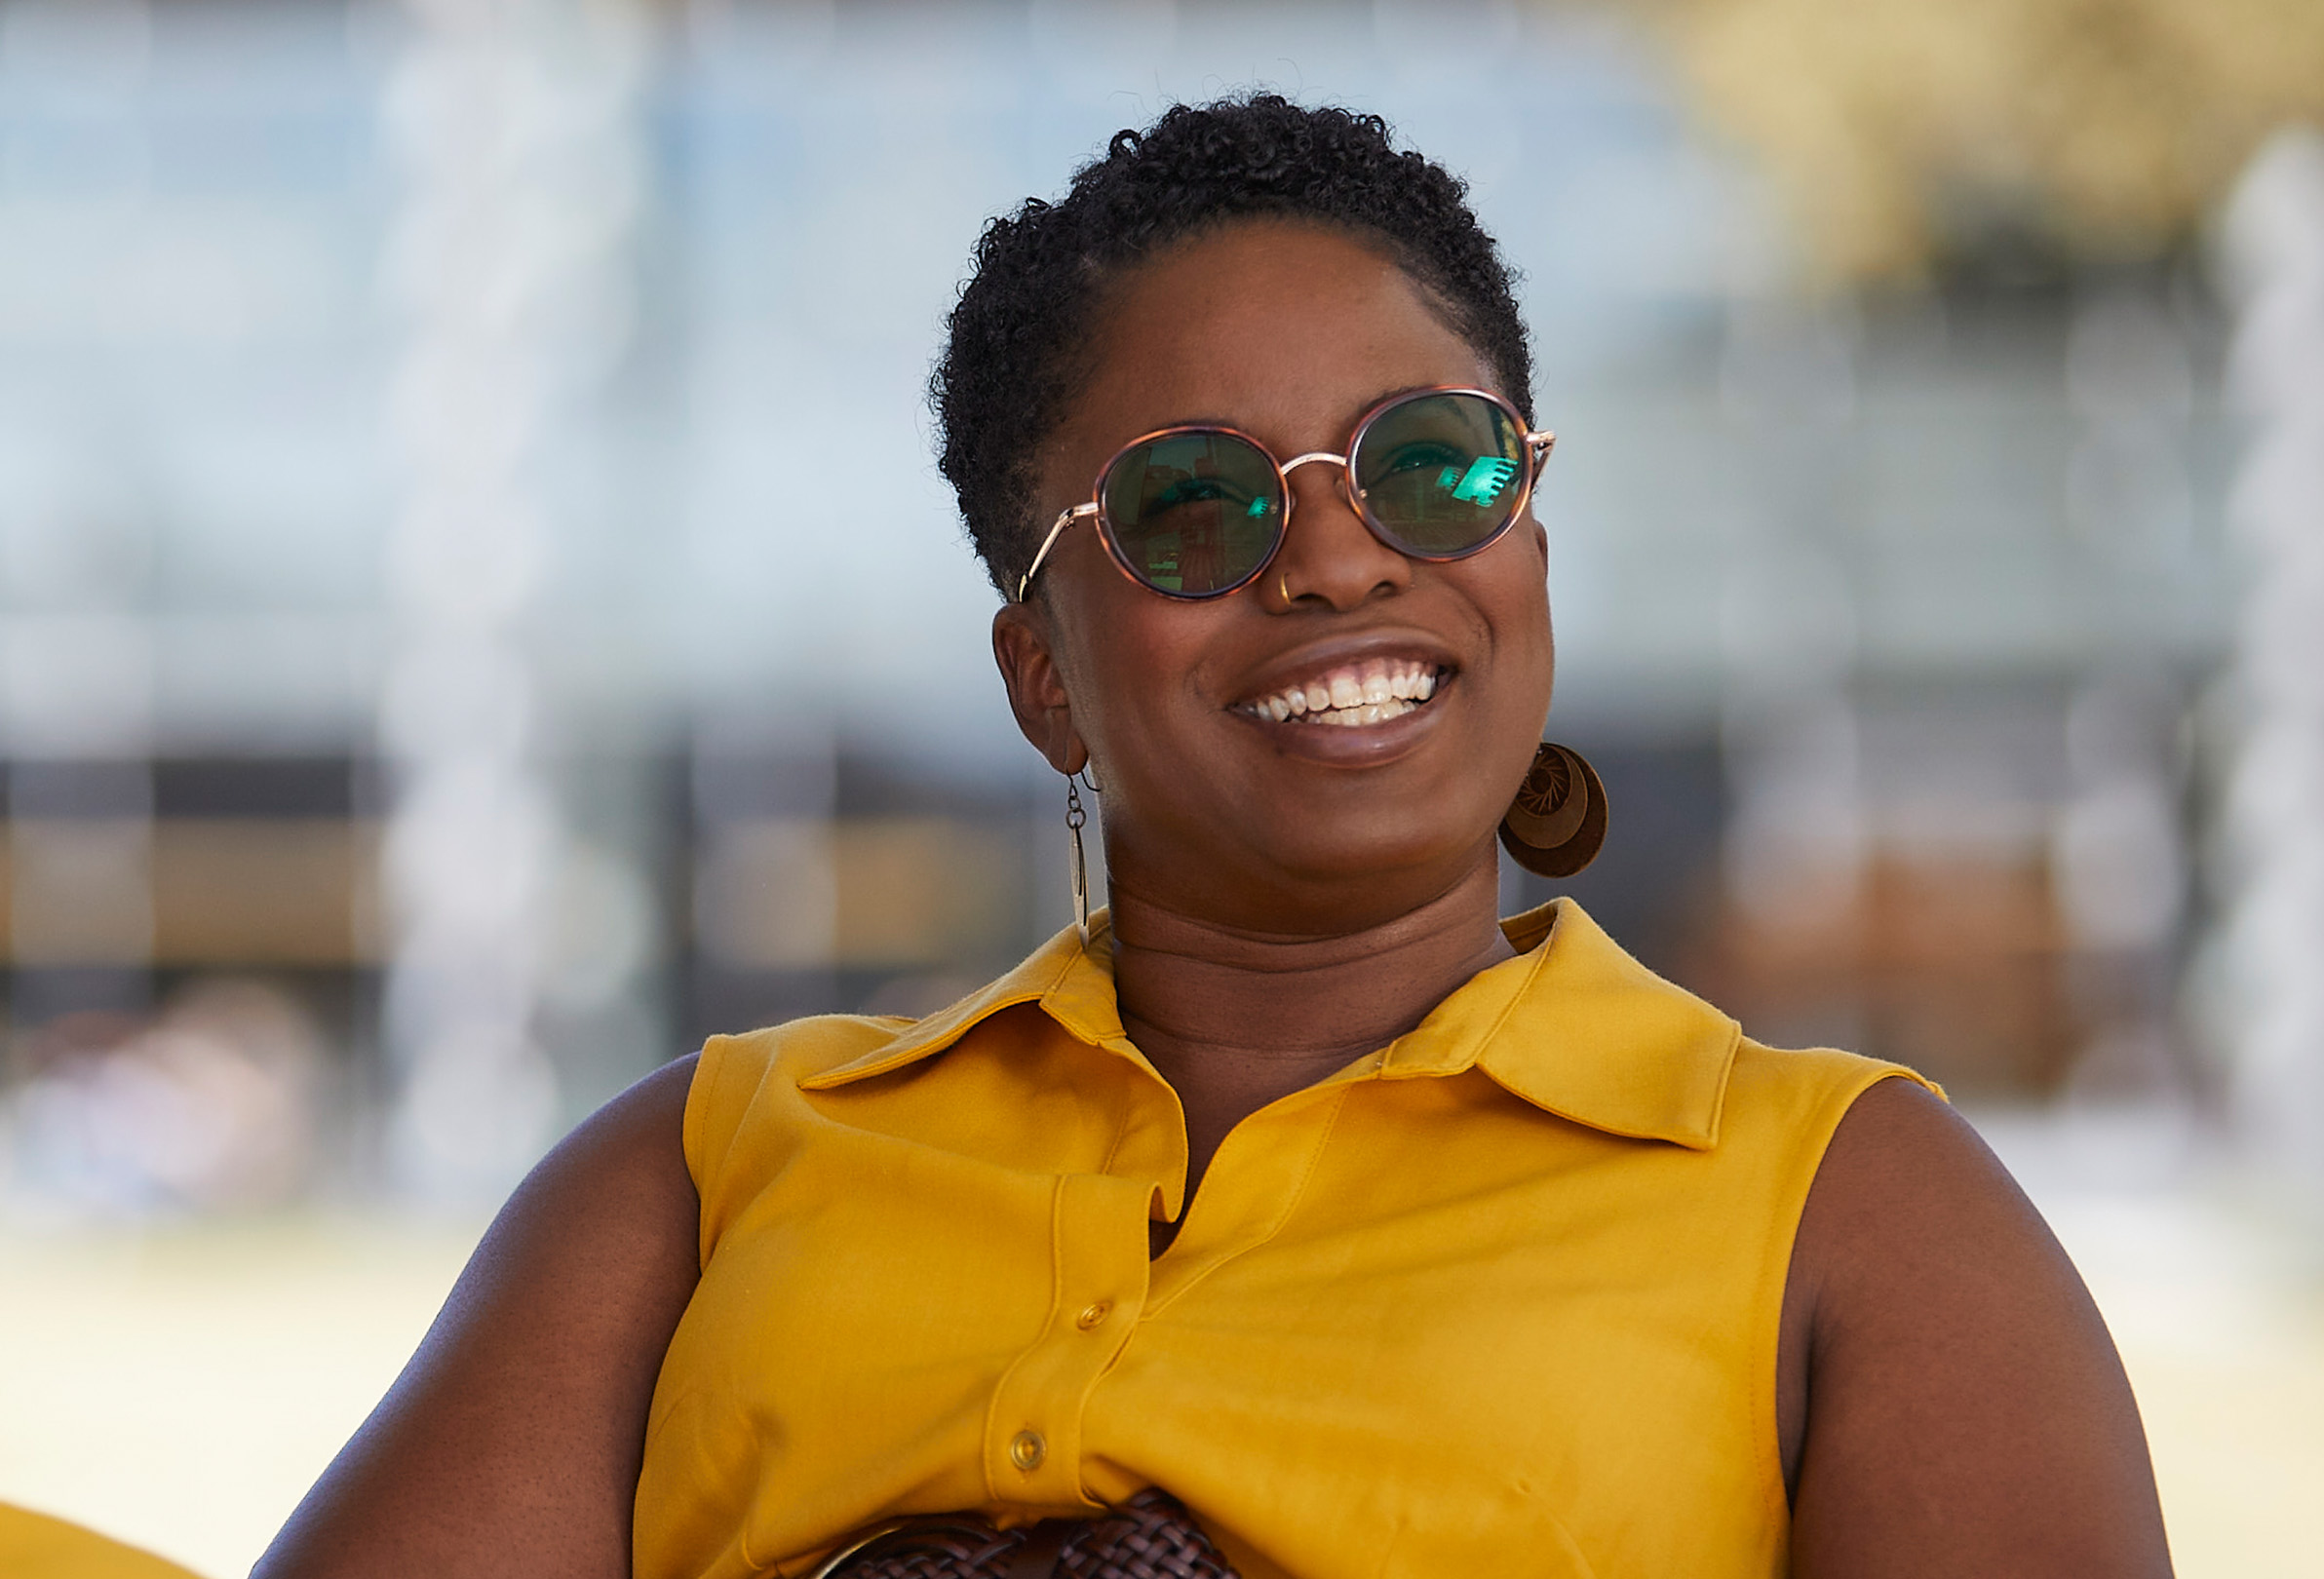 Zaměstnankyně společnosti Apple s nasazenými slunečními brýlemi sedí venku a usmívá se.